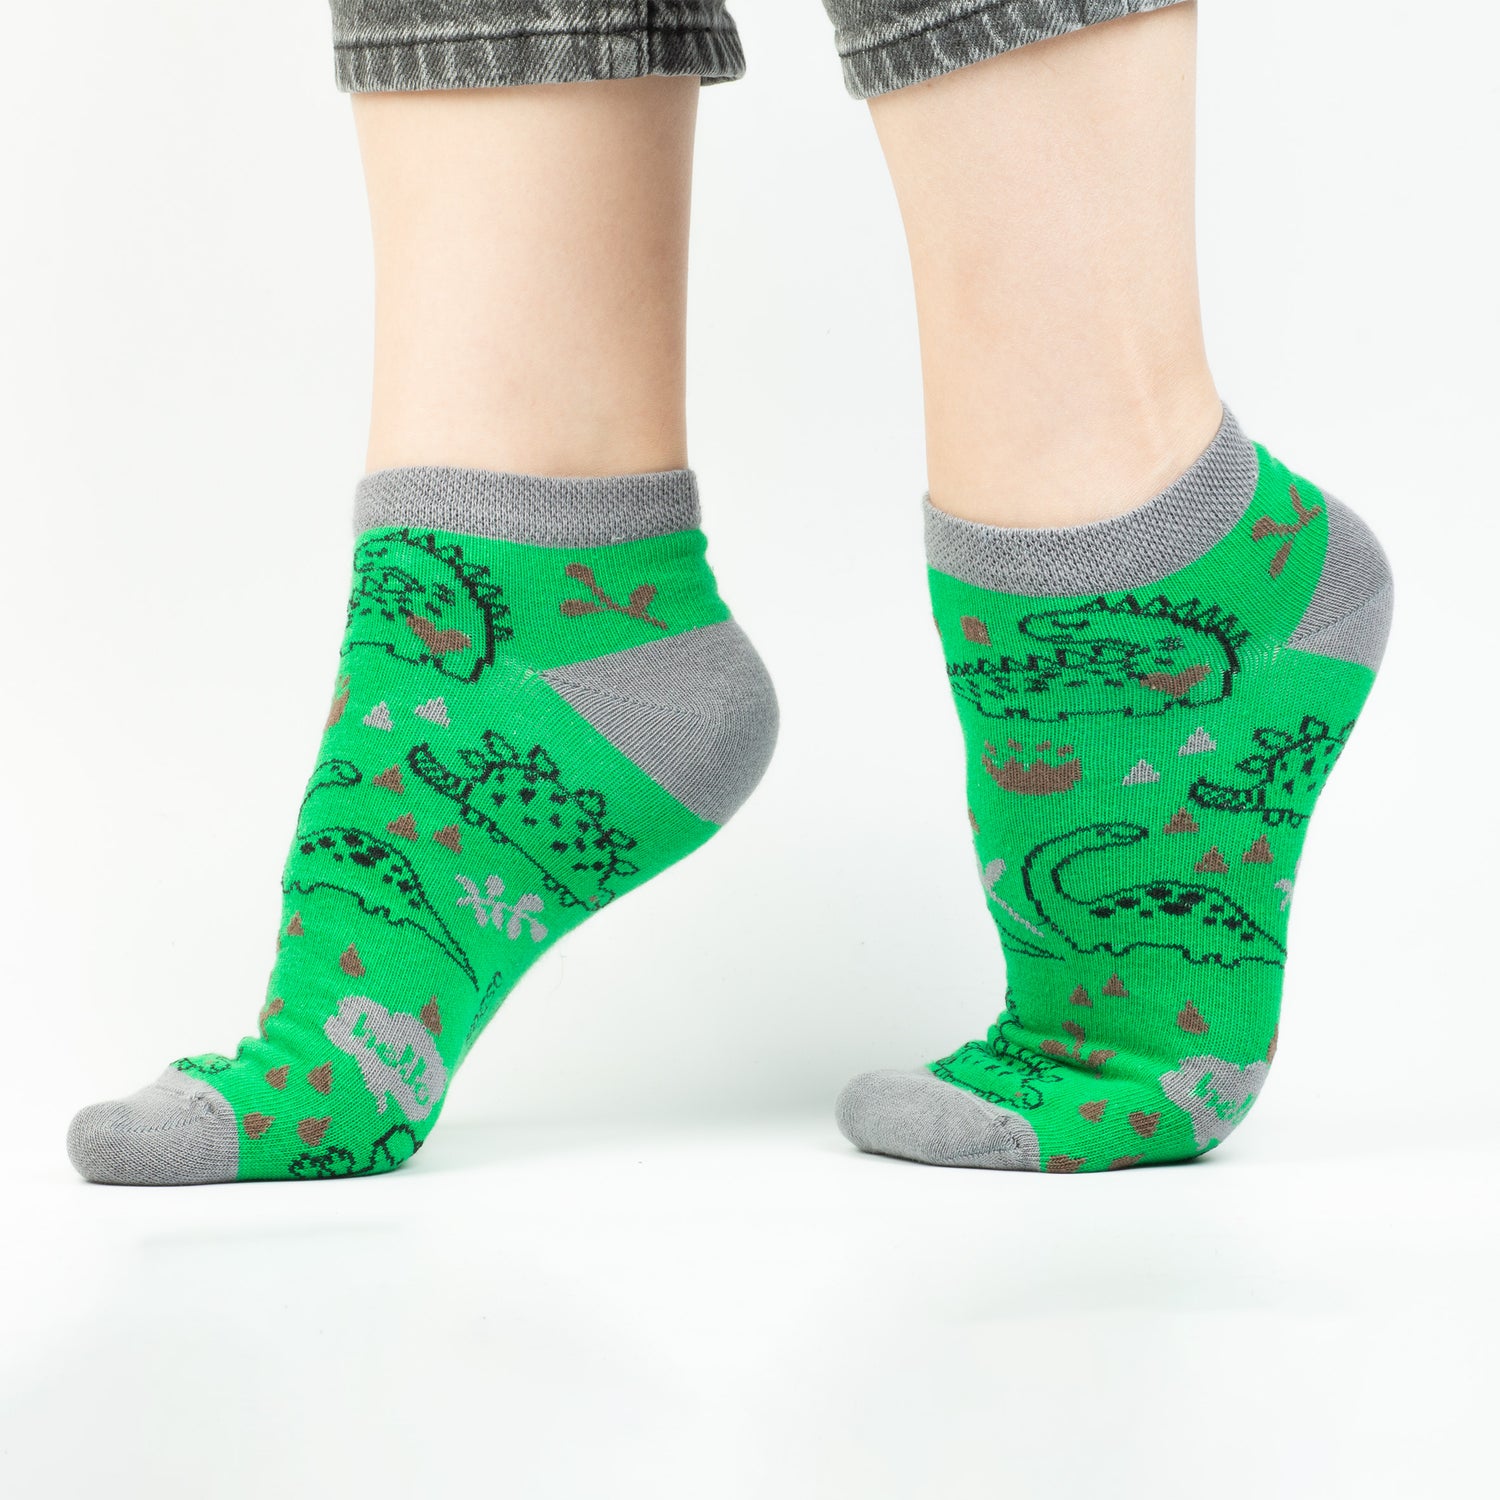 Lama-Dinazor-Köpek Desenli Çorap